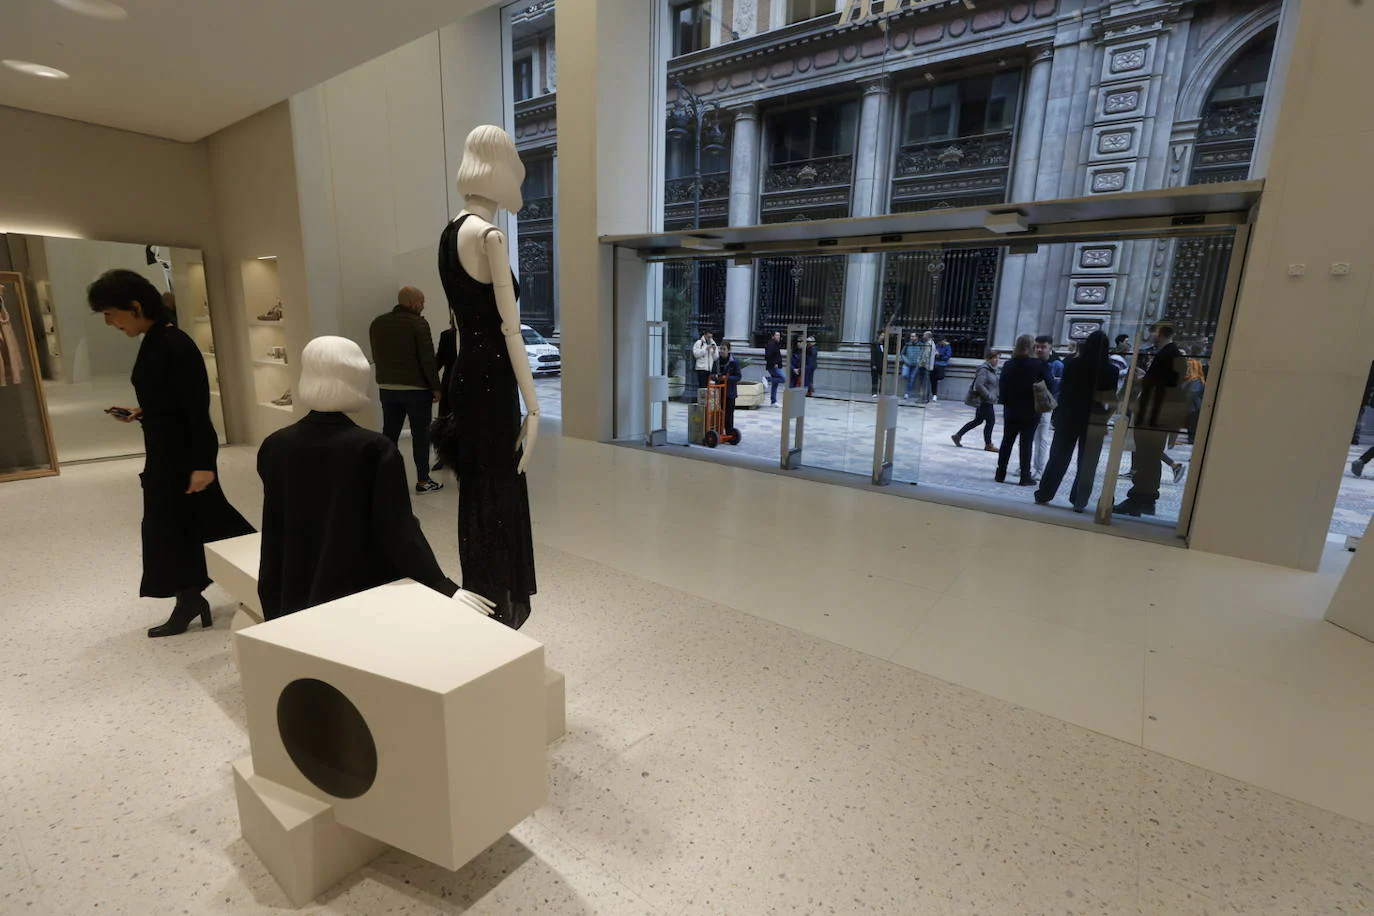 Fotos: Una macrotienda de Zara abre sus puertas en Valencia